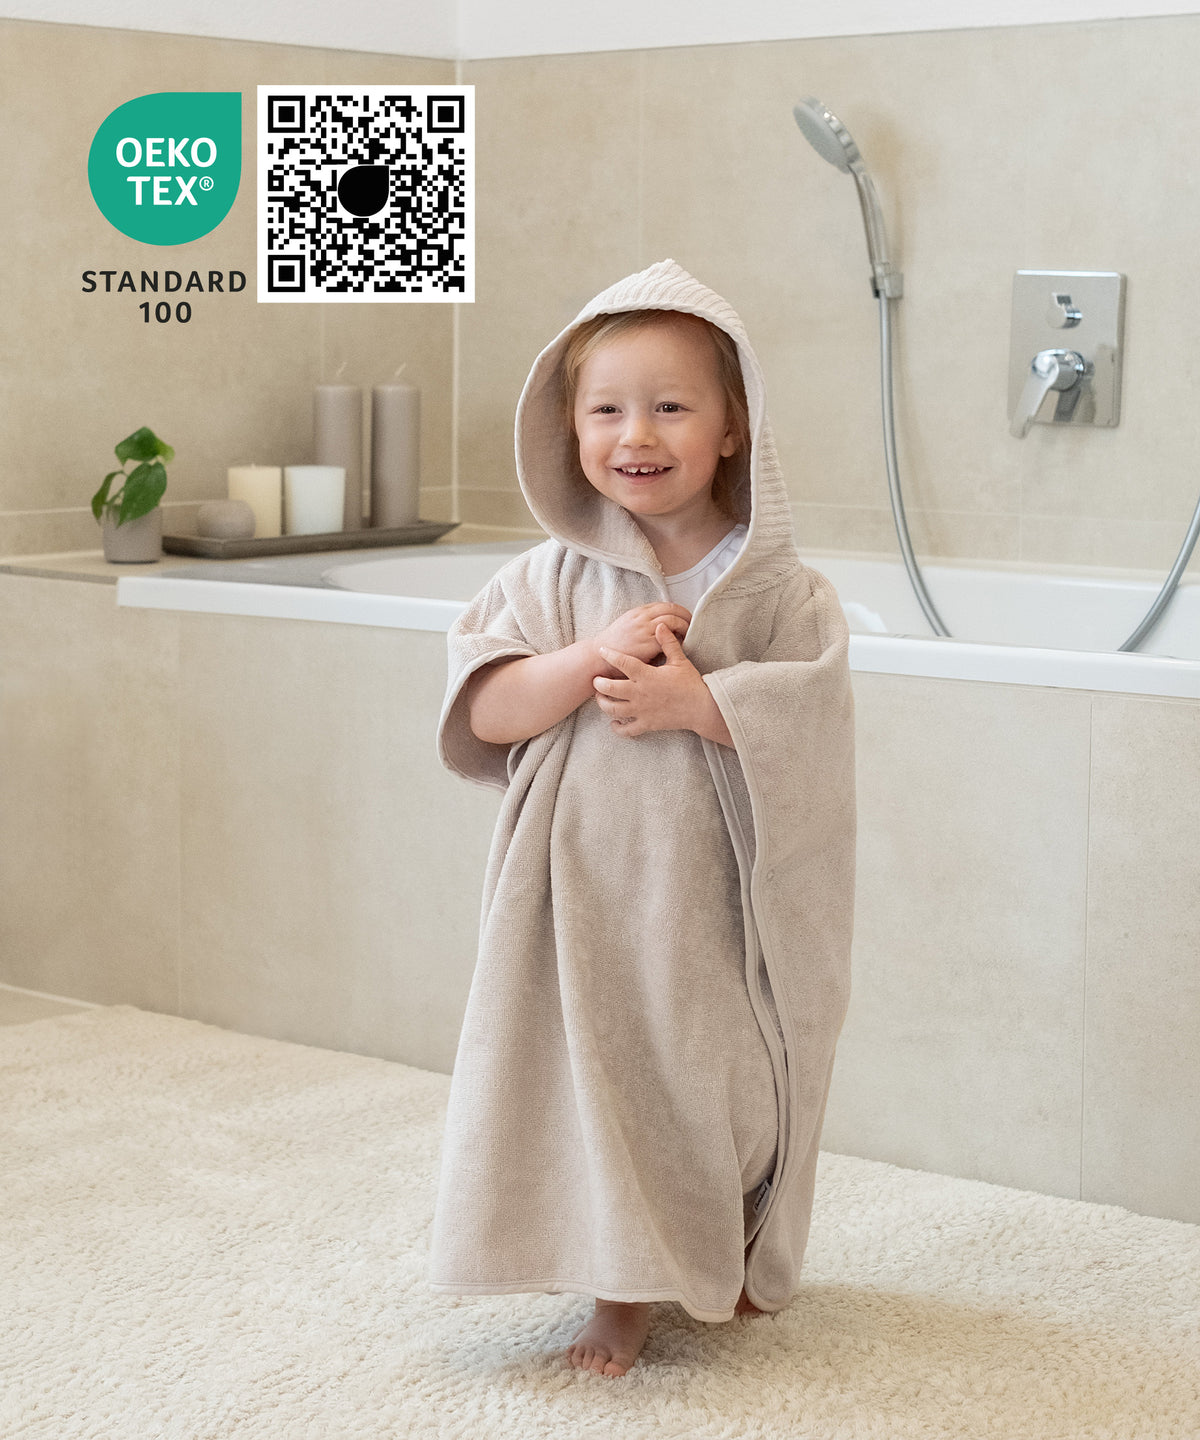 Kinder Badeponcho ist Oeko-Tex Standard 100 zertifiziert und schadstoffgeprüft.